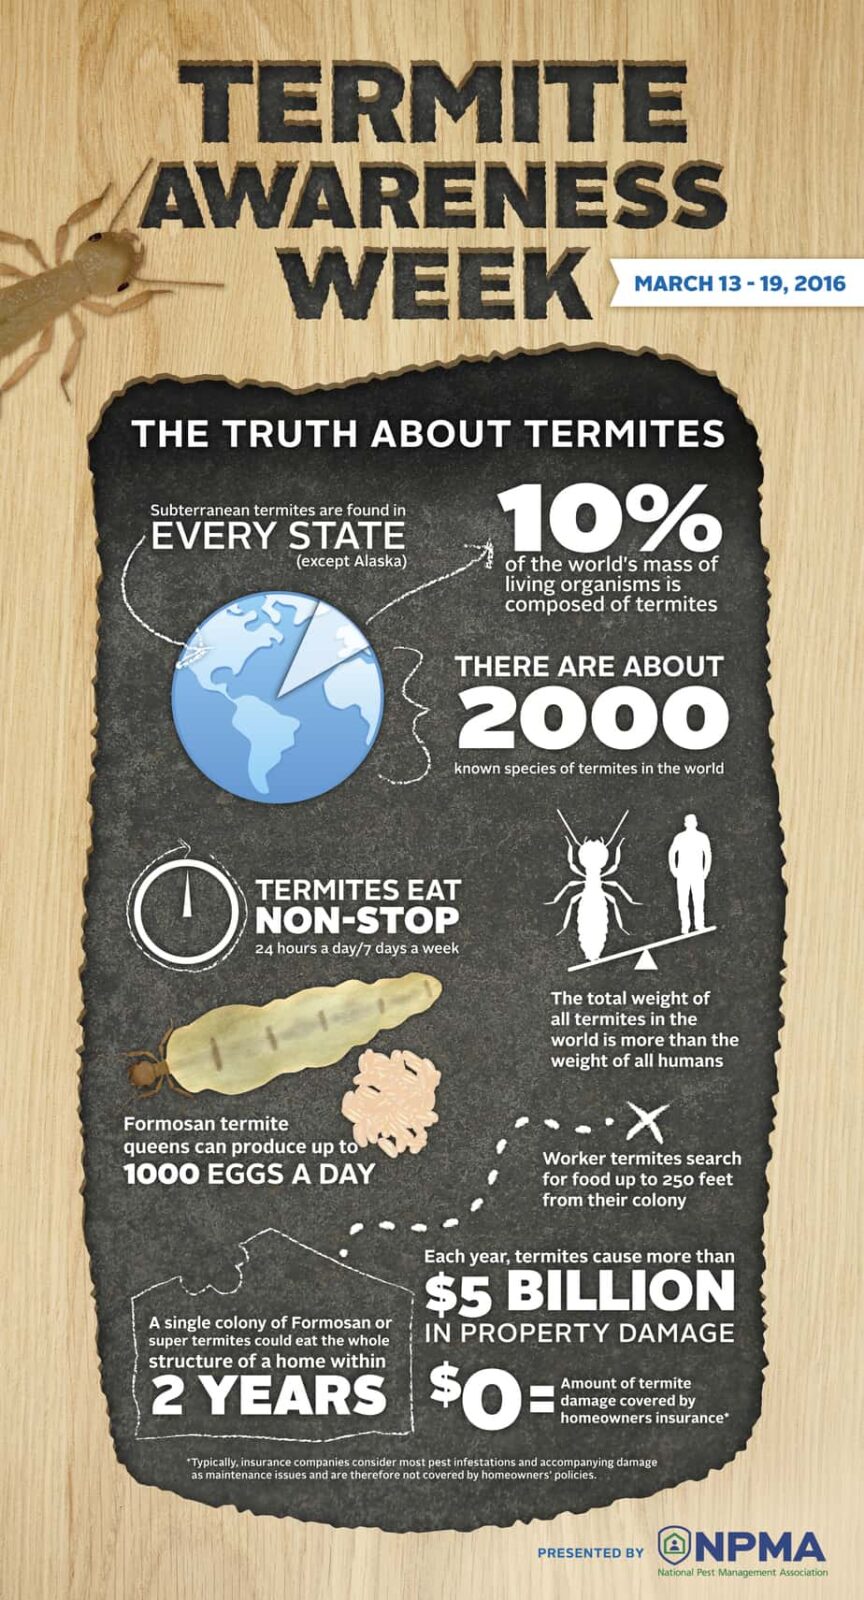 Termite extermination